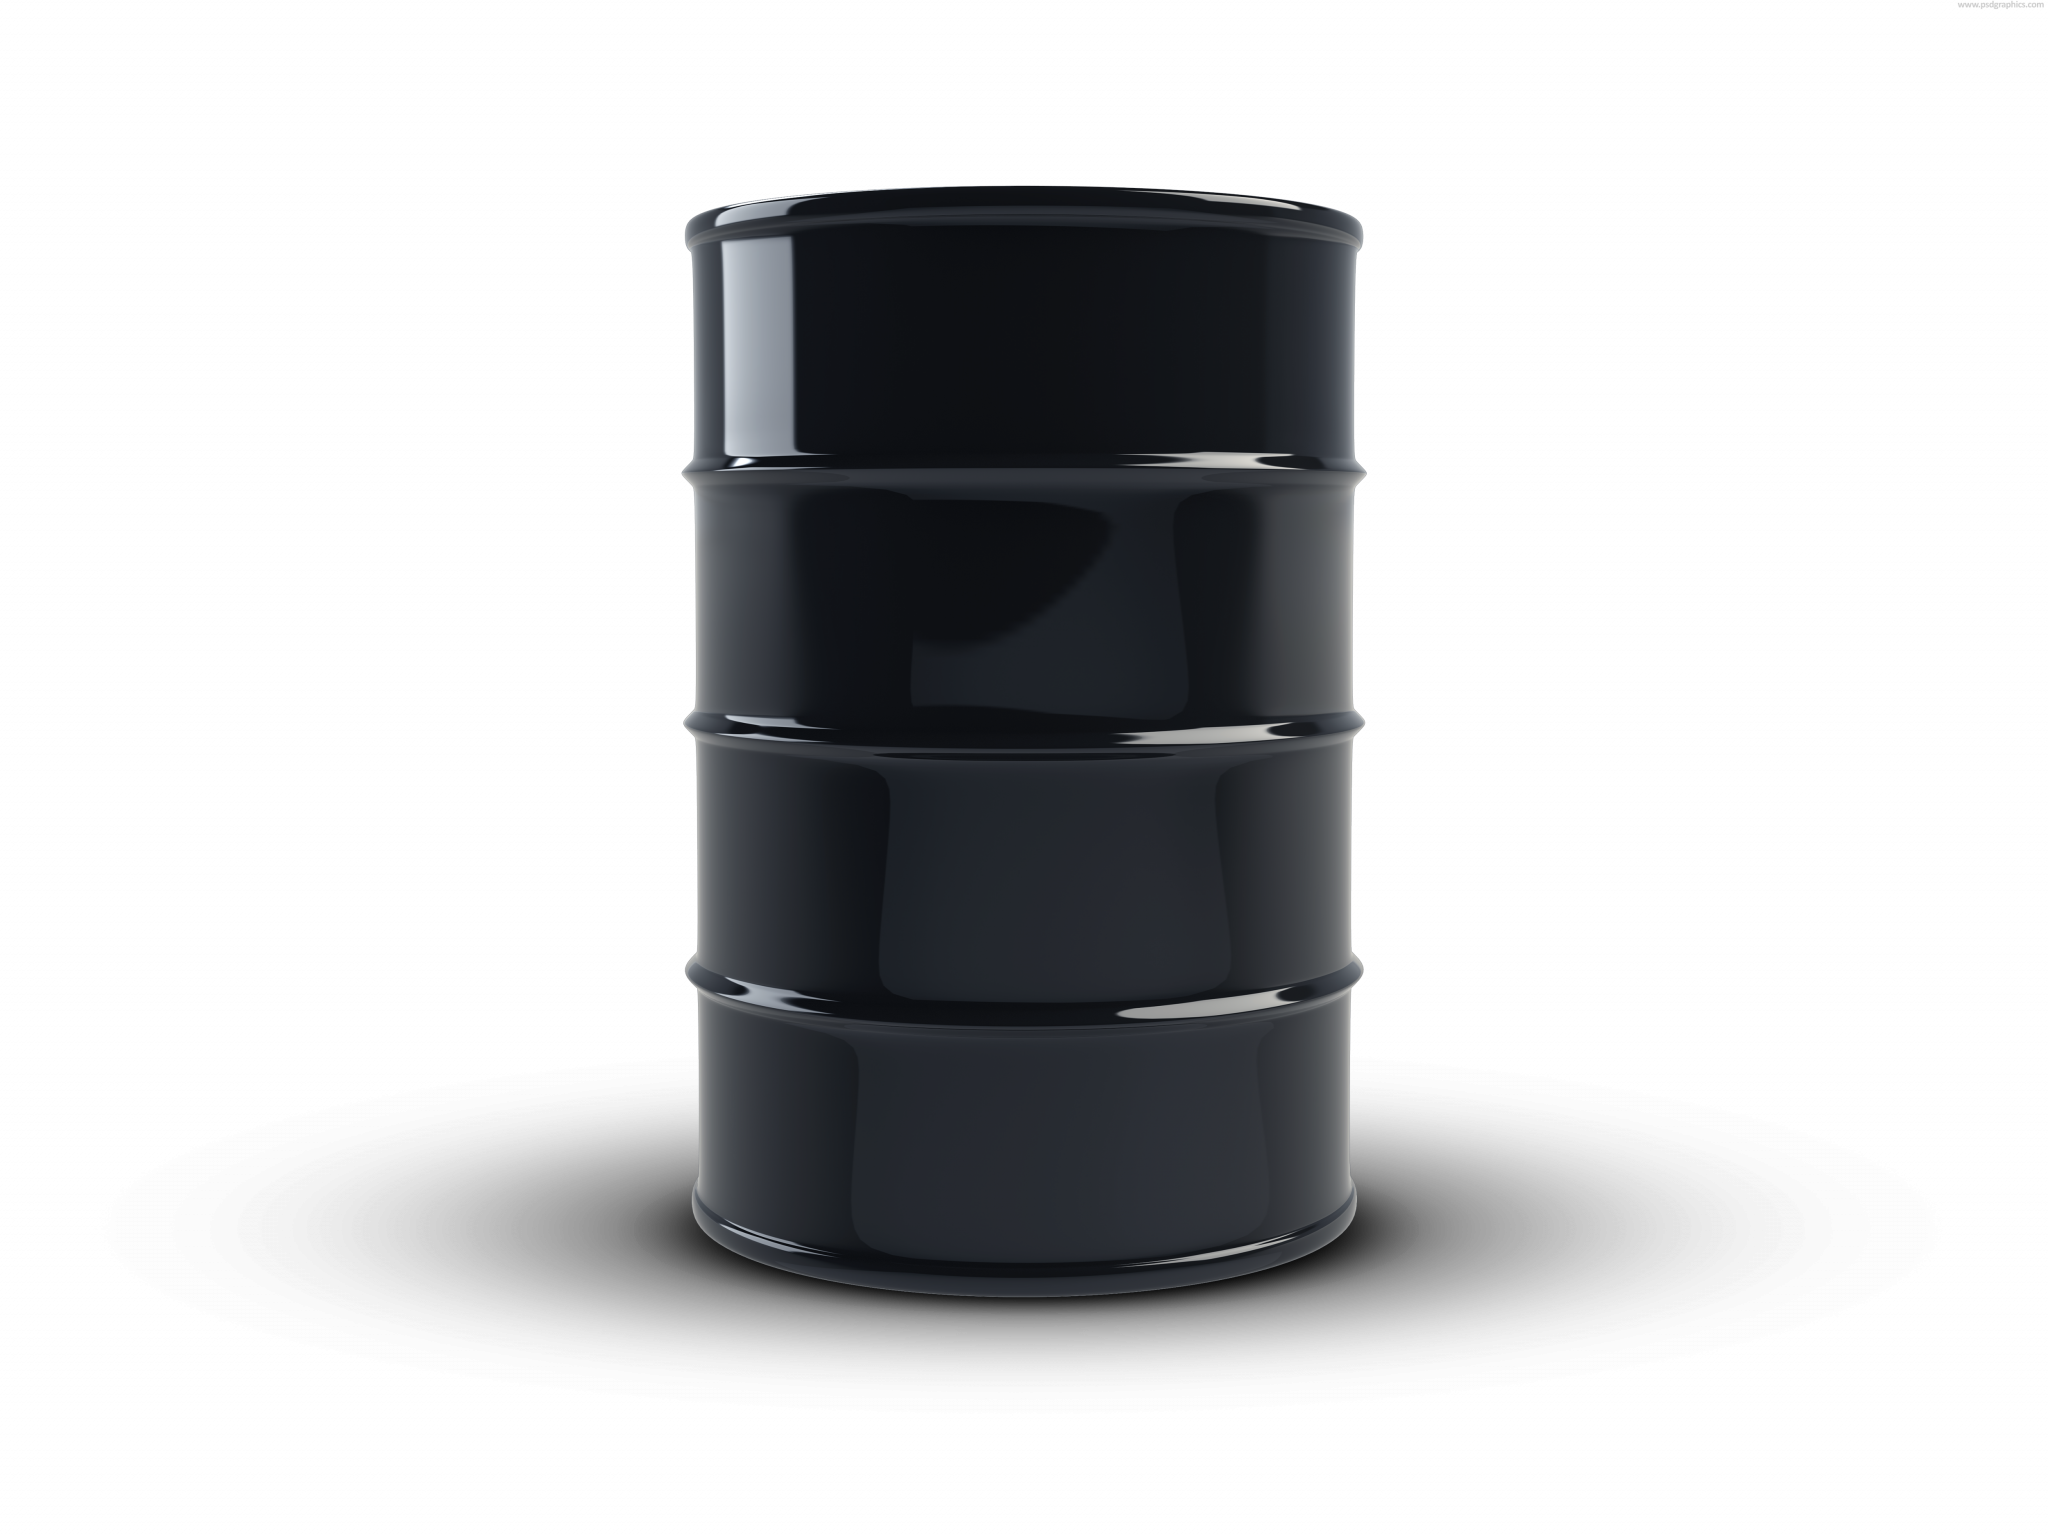 petroleum oil barrel